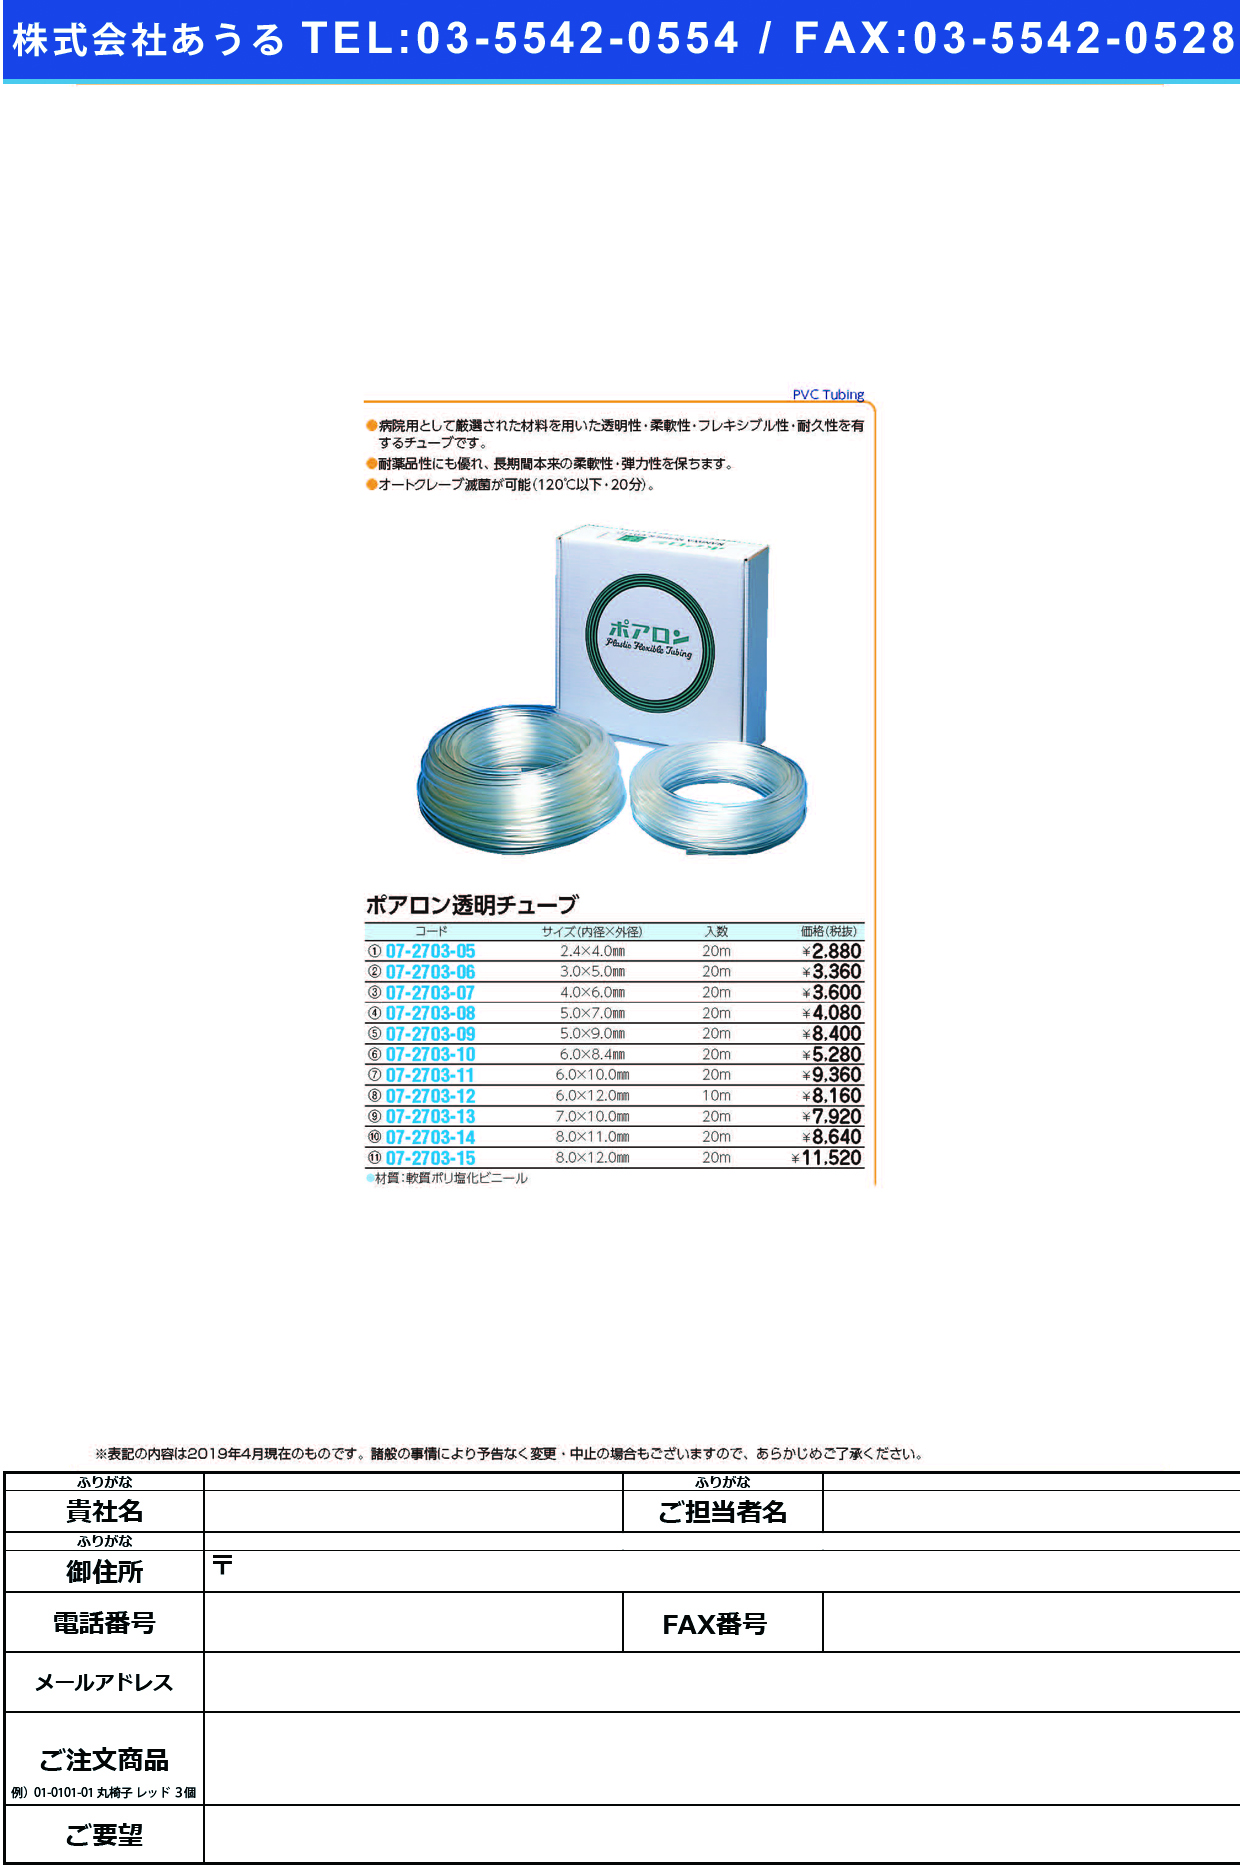 (07-2703-15)ポアロン透明チューブ 8X12MM(20Mｲﾘ) ﾎﾟｱﾛﾝﾄｳﾒｲﾁｭｰﾌﾞ【1箱単位】【2019年カタログ商品】